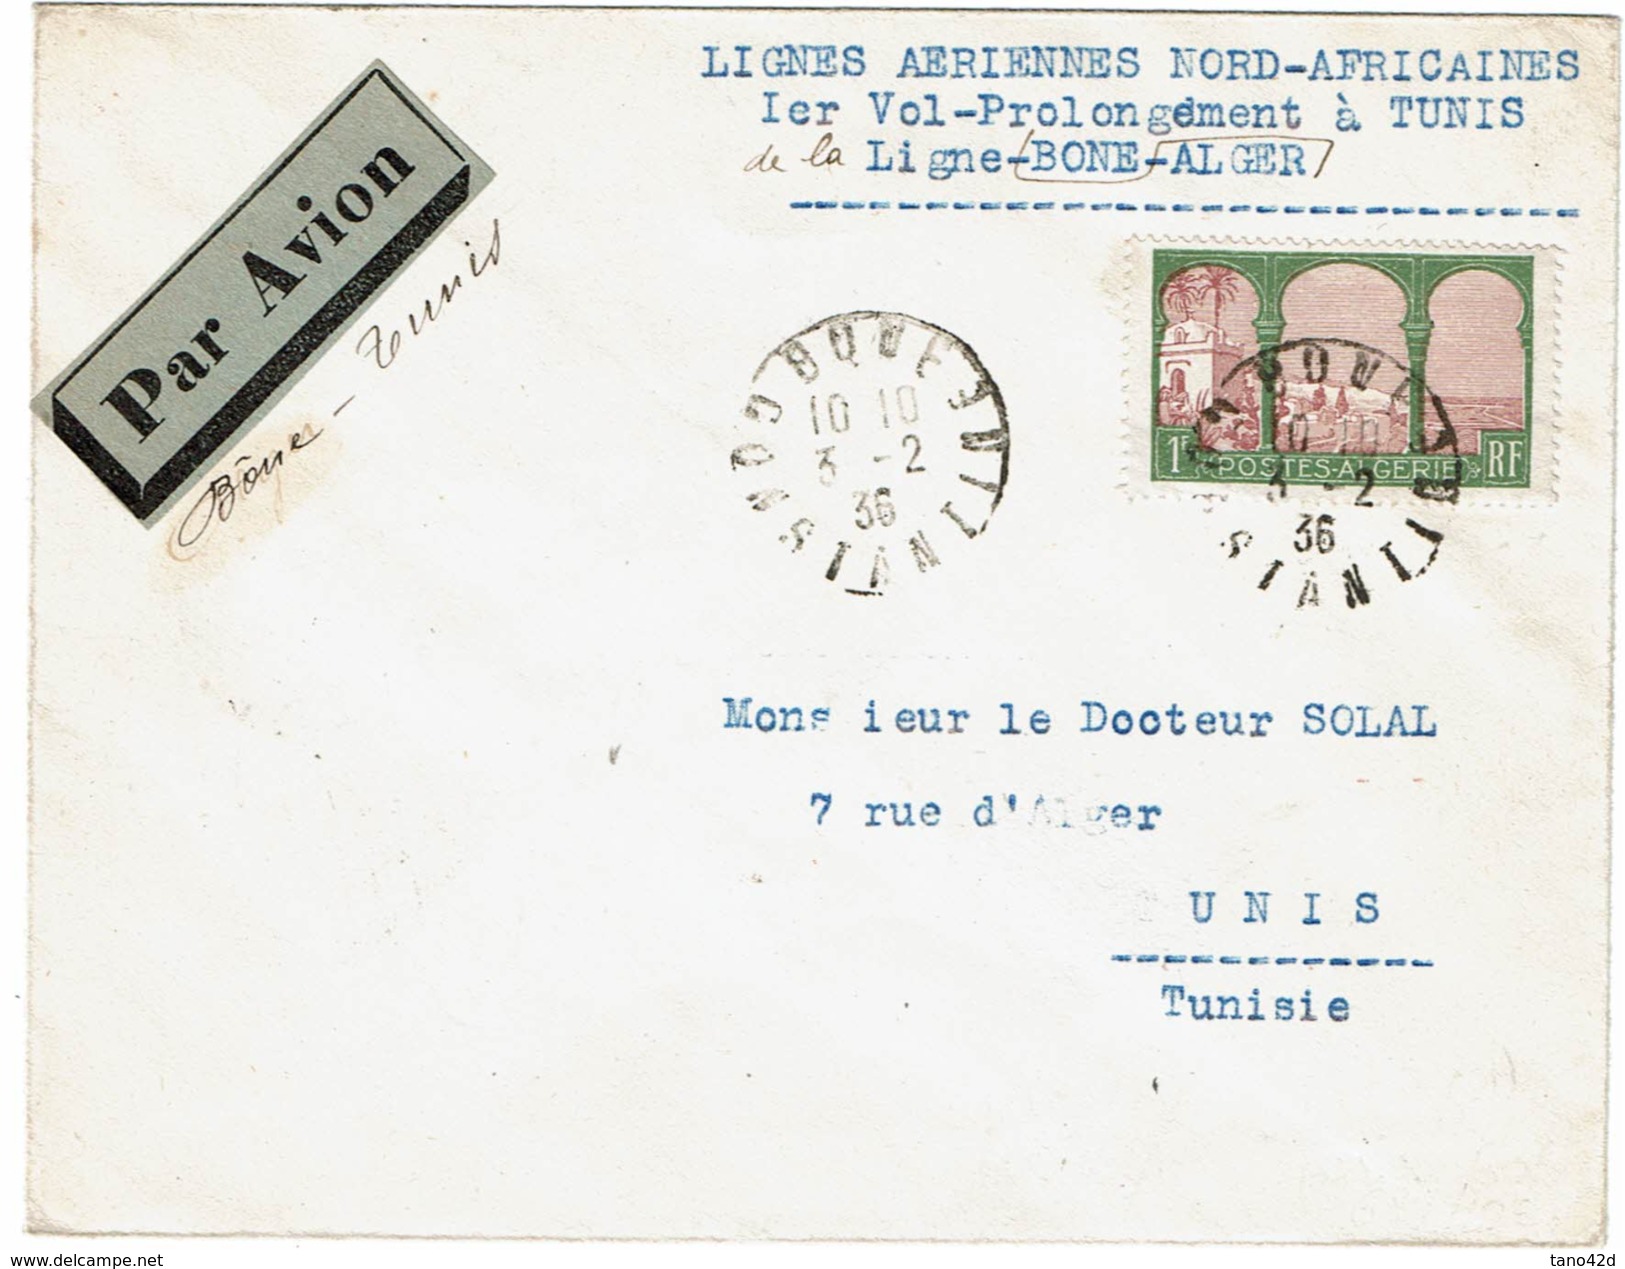 LMON1 - ALGERIE LIGNEA AERIENNES NORD-AFRICAINES 1er VOL BONE-TUNIS 3/2/1936 - Luchtpost